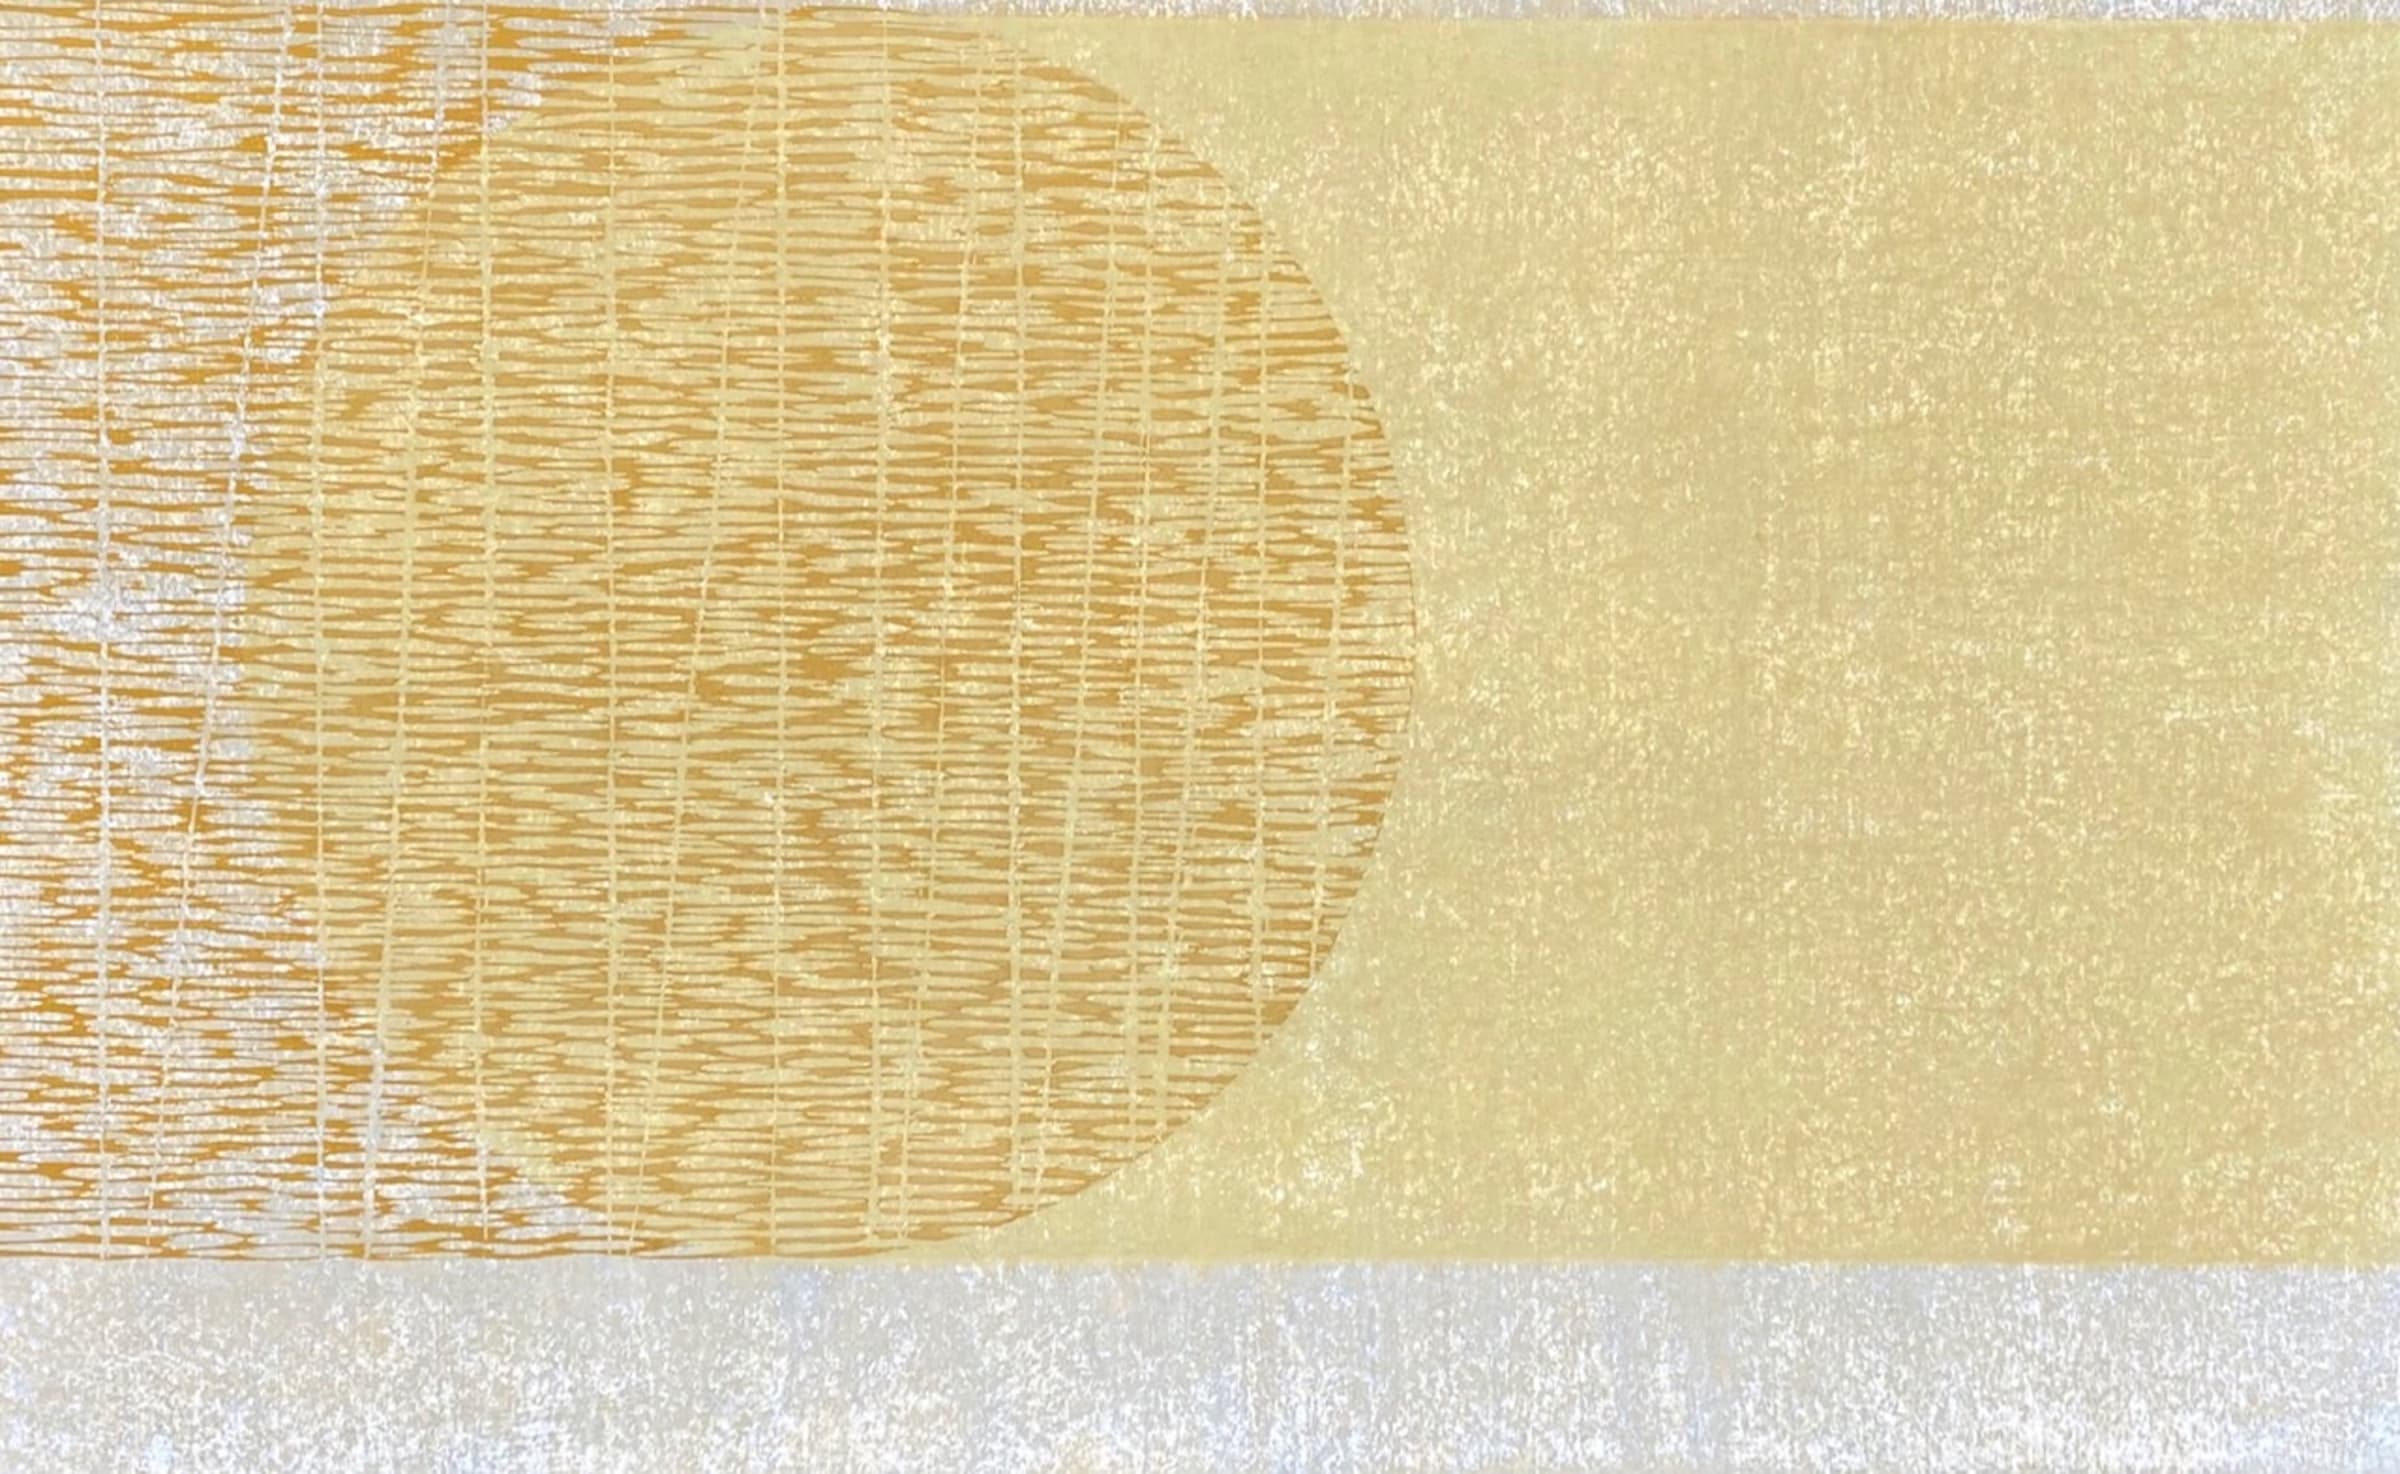 Kate Mc Donagh, Cadence 2, Mokuhanga, 60 x 95 cm.